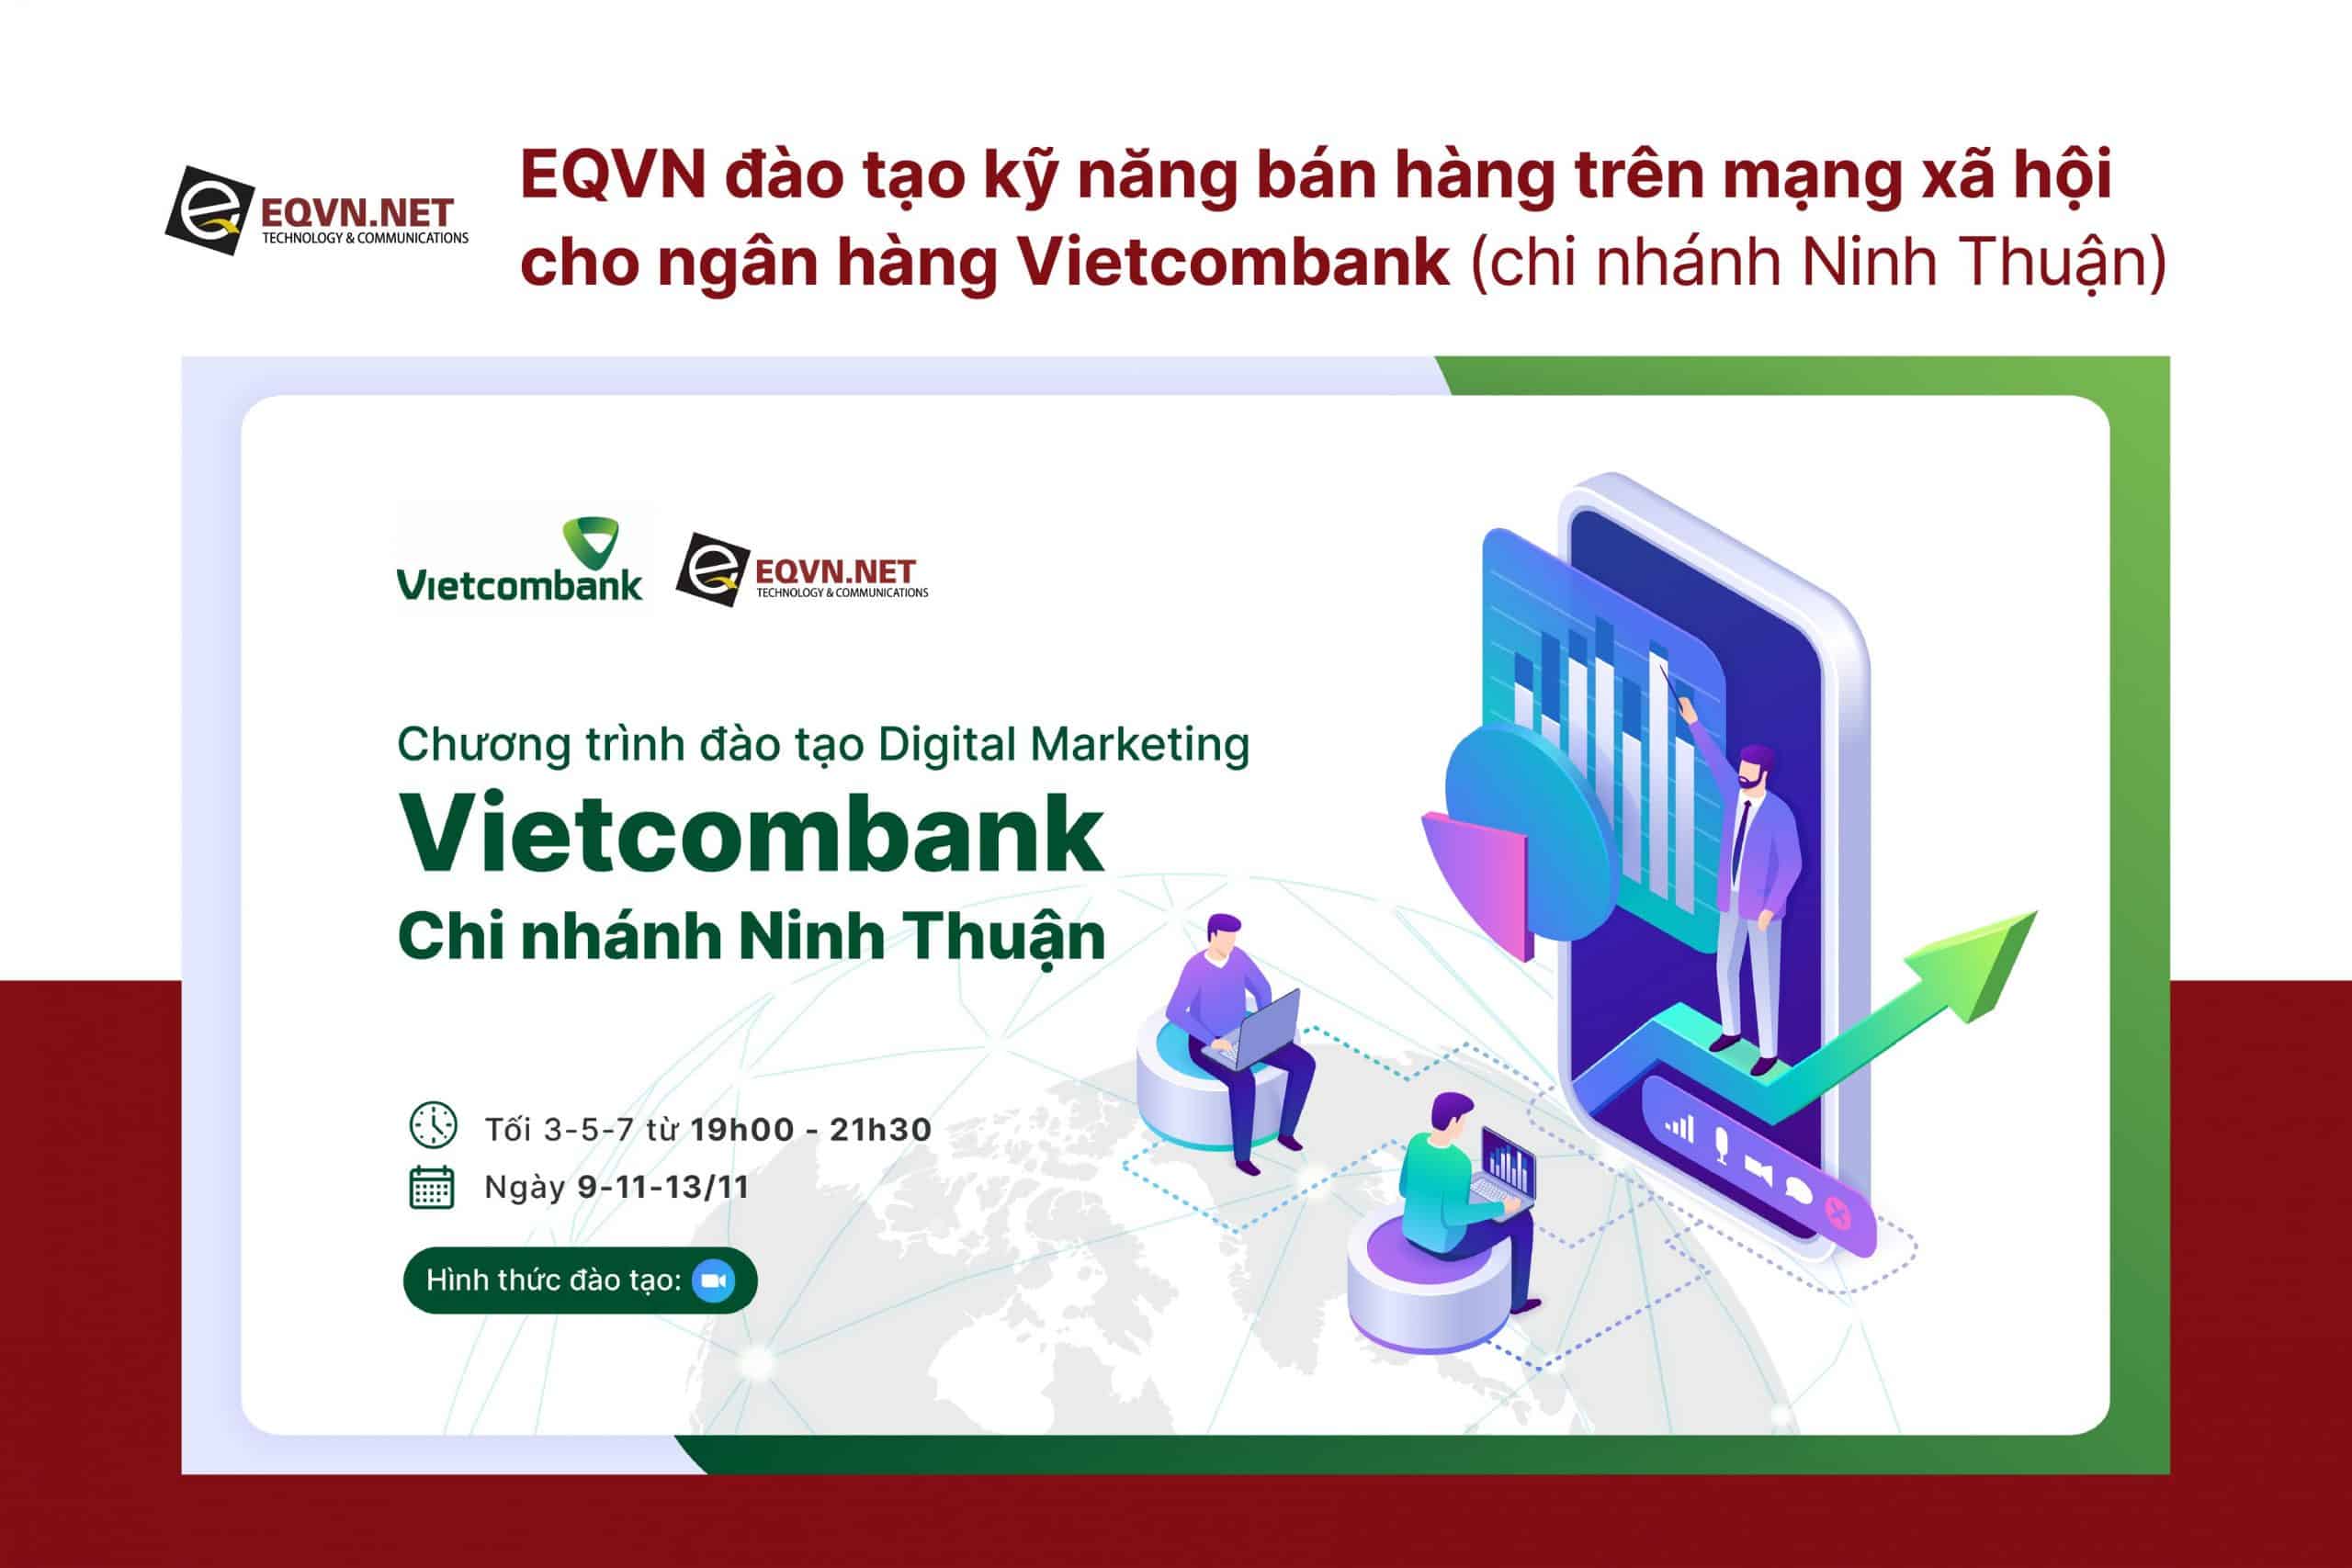 EQVN đào tạo inhouse cho ngân hàng Vietcombank (Niình Thuận)